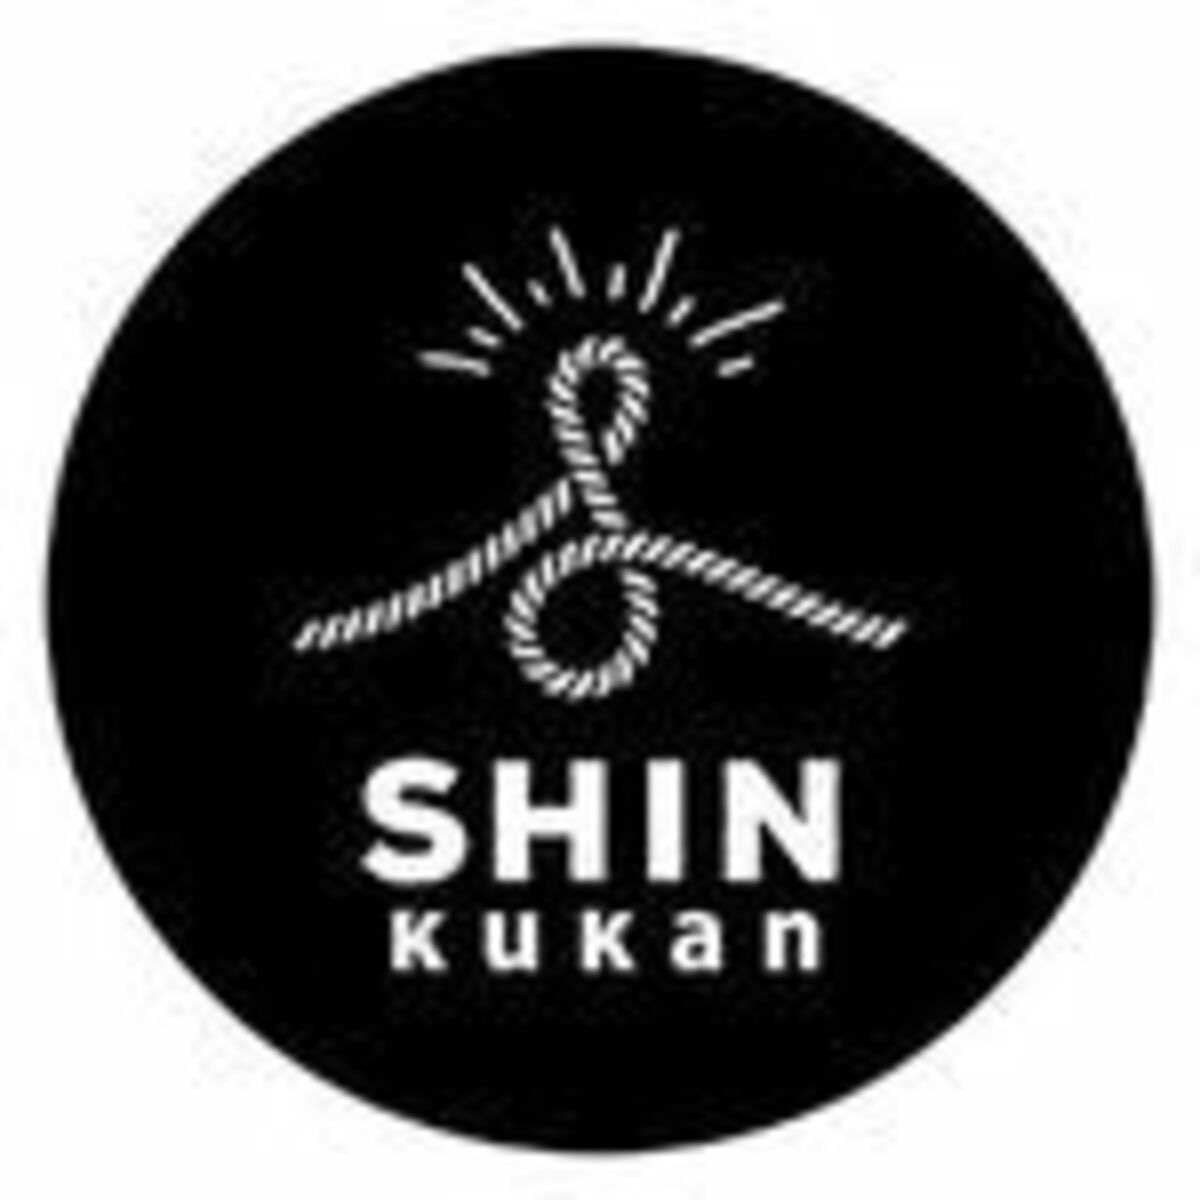 Shin空間のロゴ